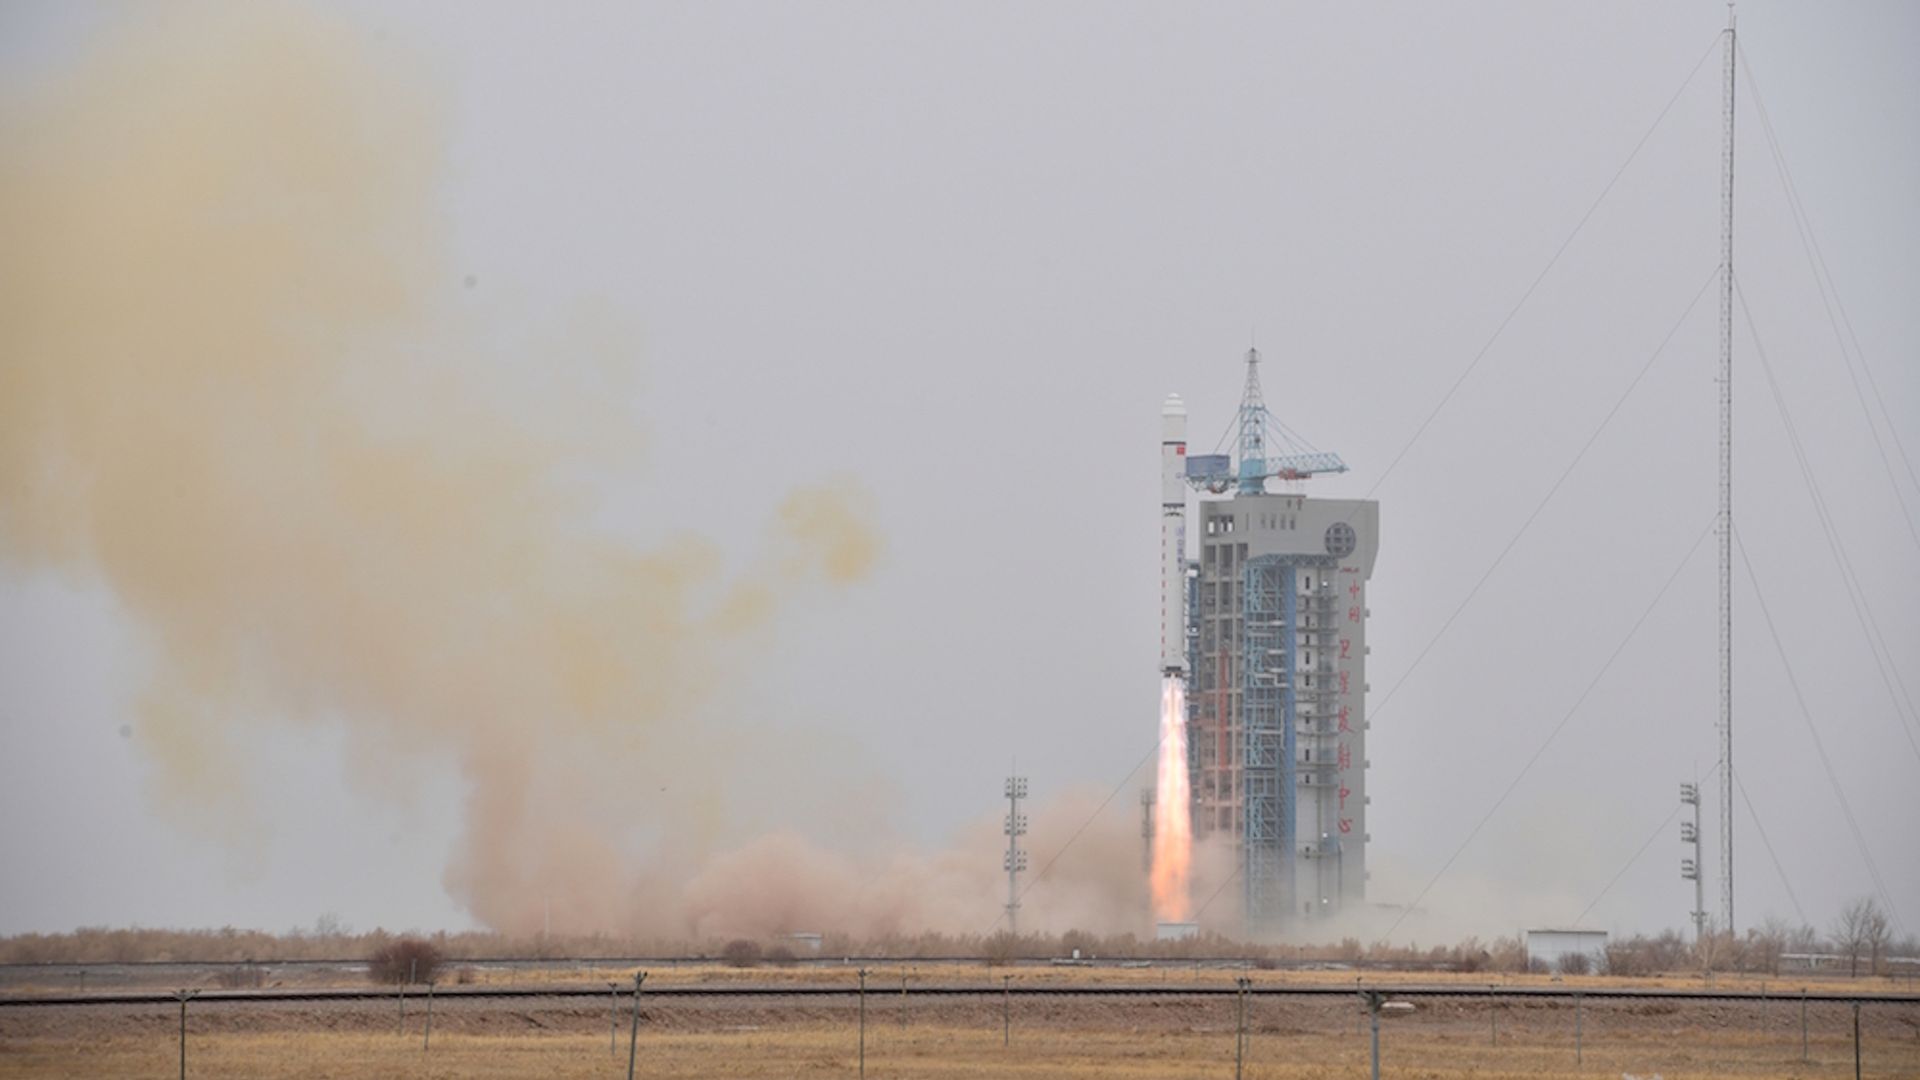 China launching a satellite. 